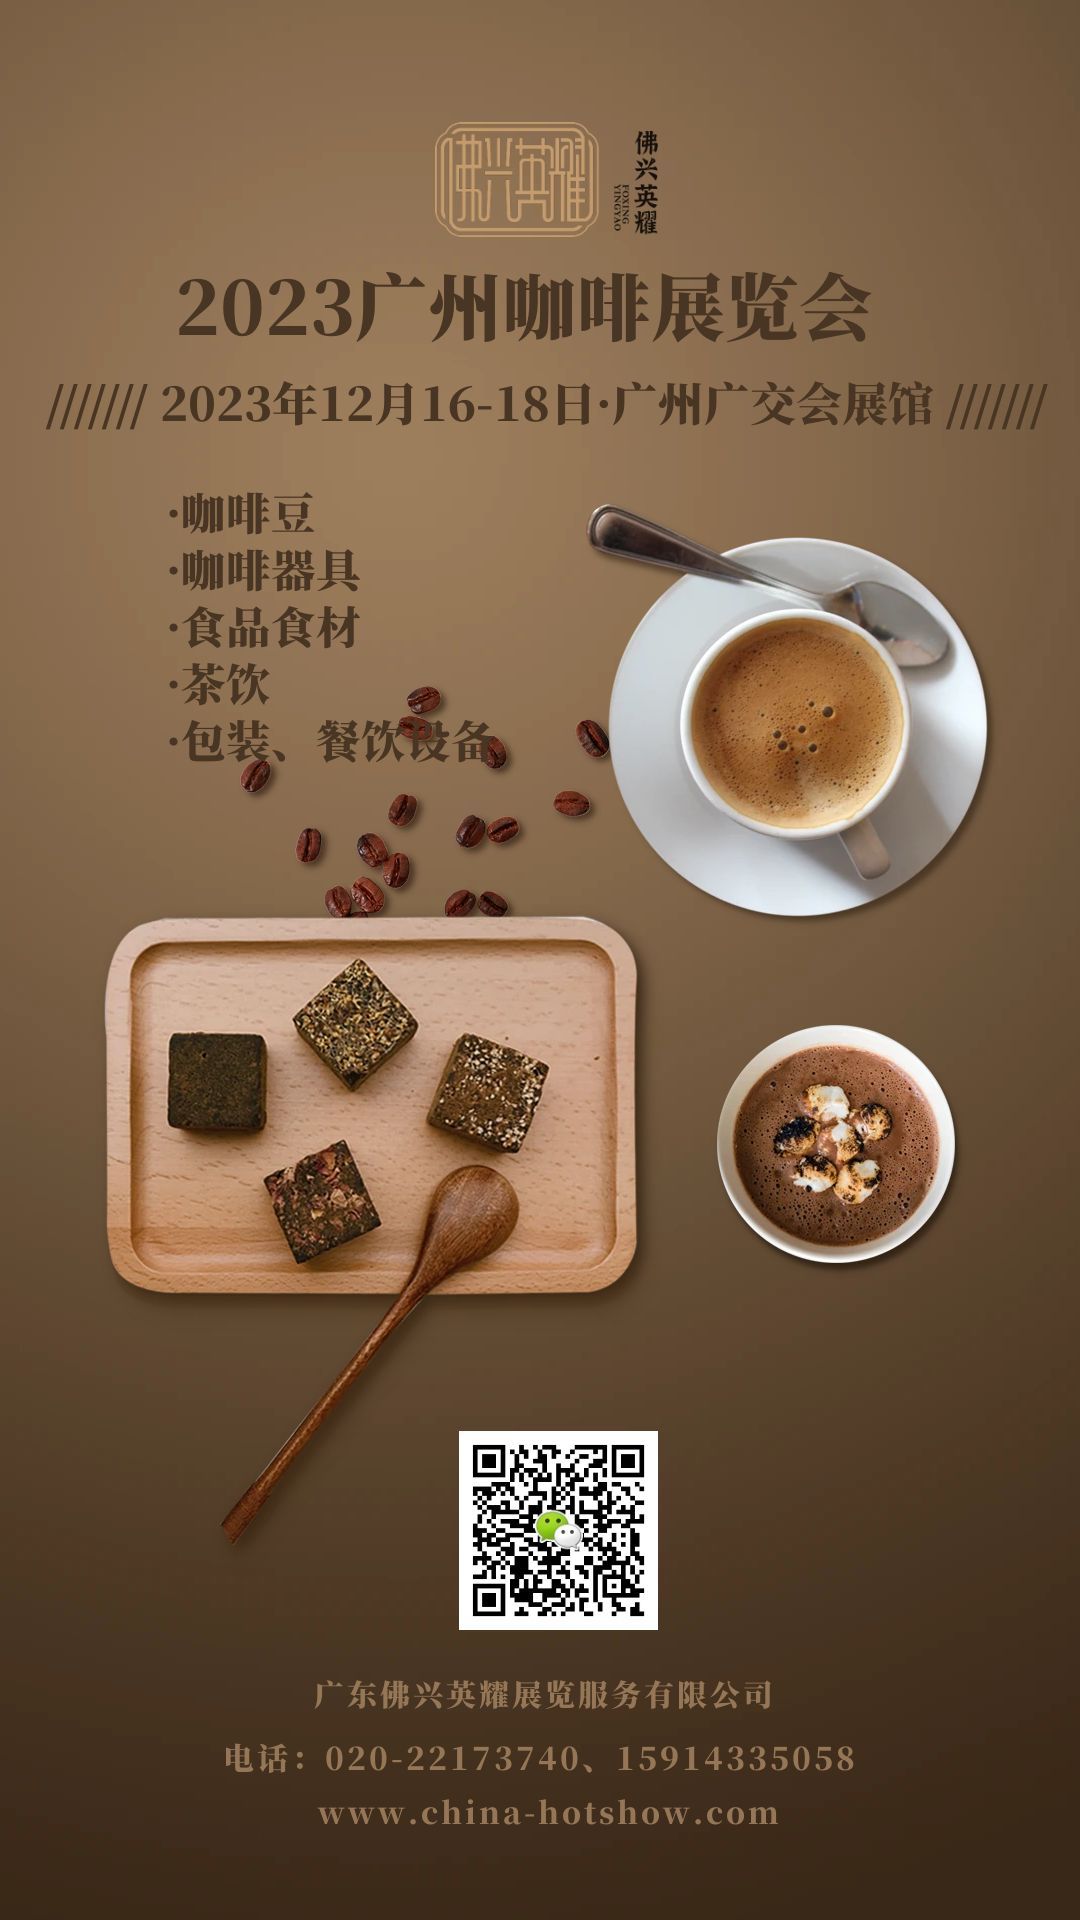 2023广州咖啡展览会